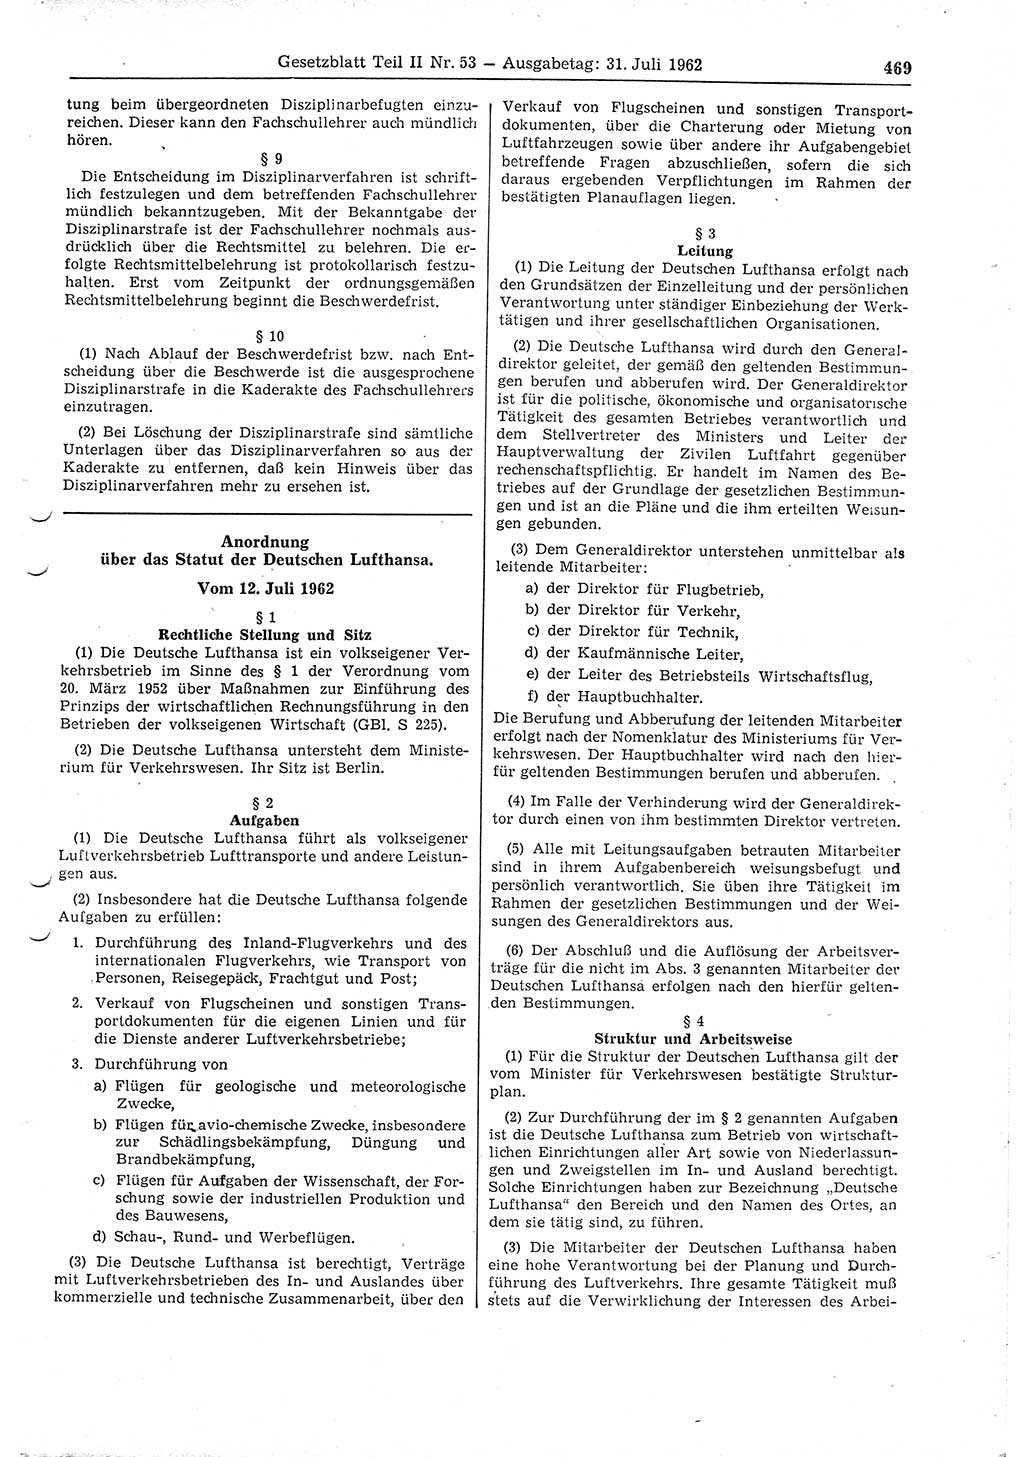 Gesetzblatt (GBl.) der Deutschen Demokratischen Republik (DDR) Teil ⅠⅠ 1962, Seite 469 (GBl. DDR ⅠⅠ 1962, S. 469)